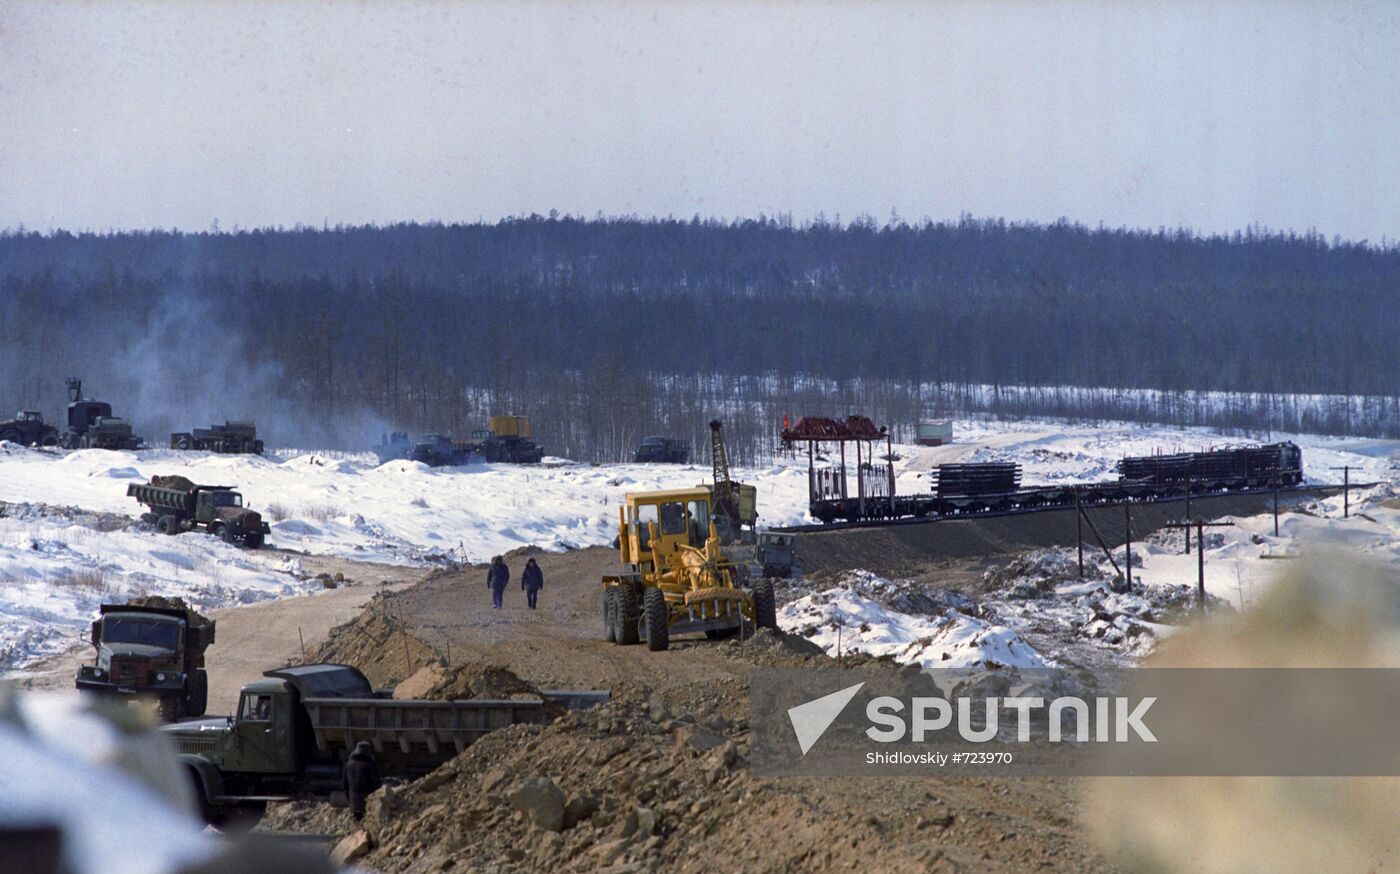 Building the Baikal-Amur Mainline